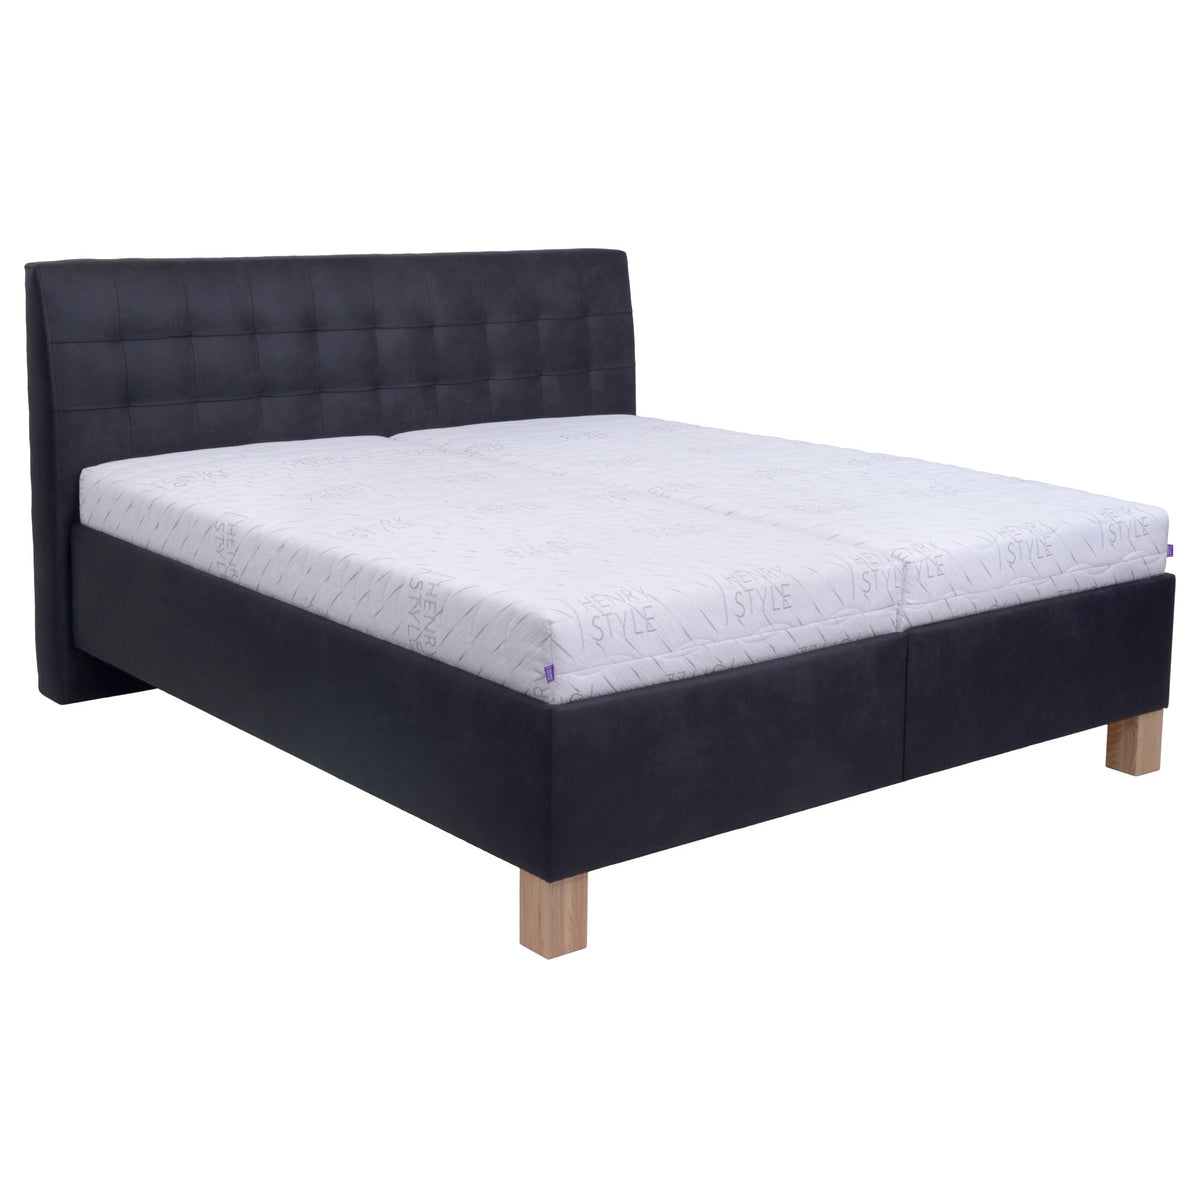 Čalúnená posteľ Victoria 160x200, čierna, bez matraca